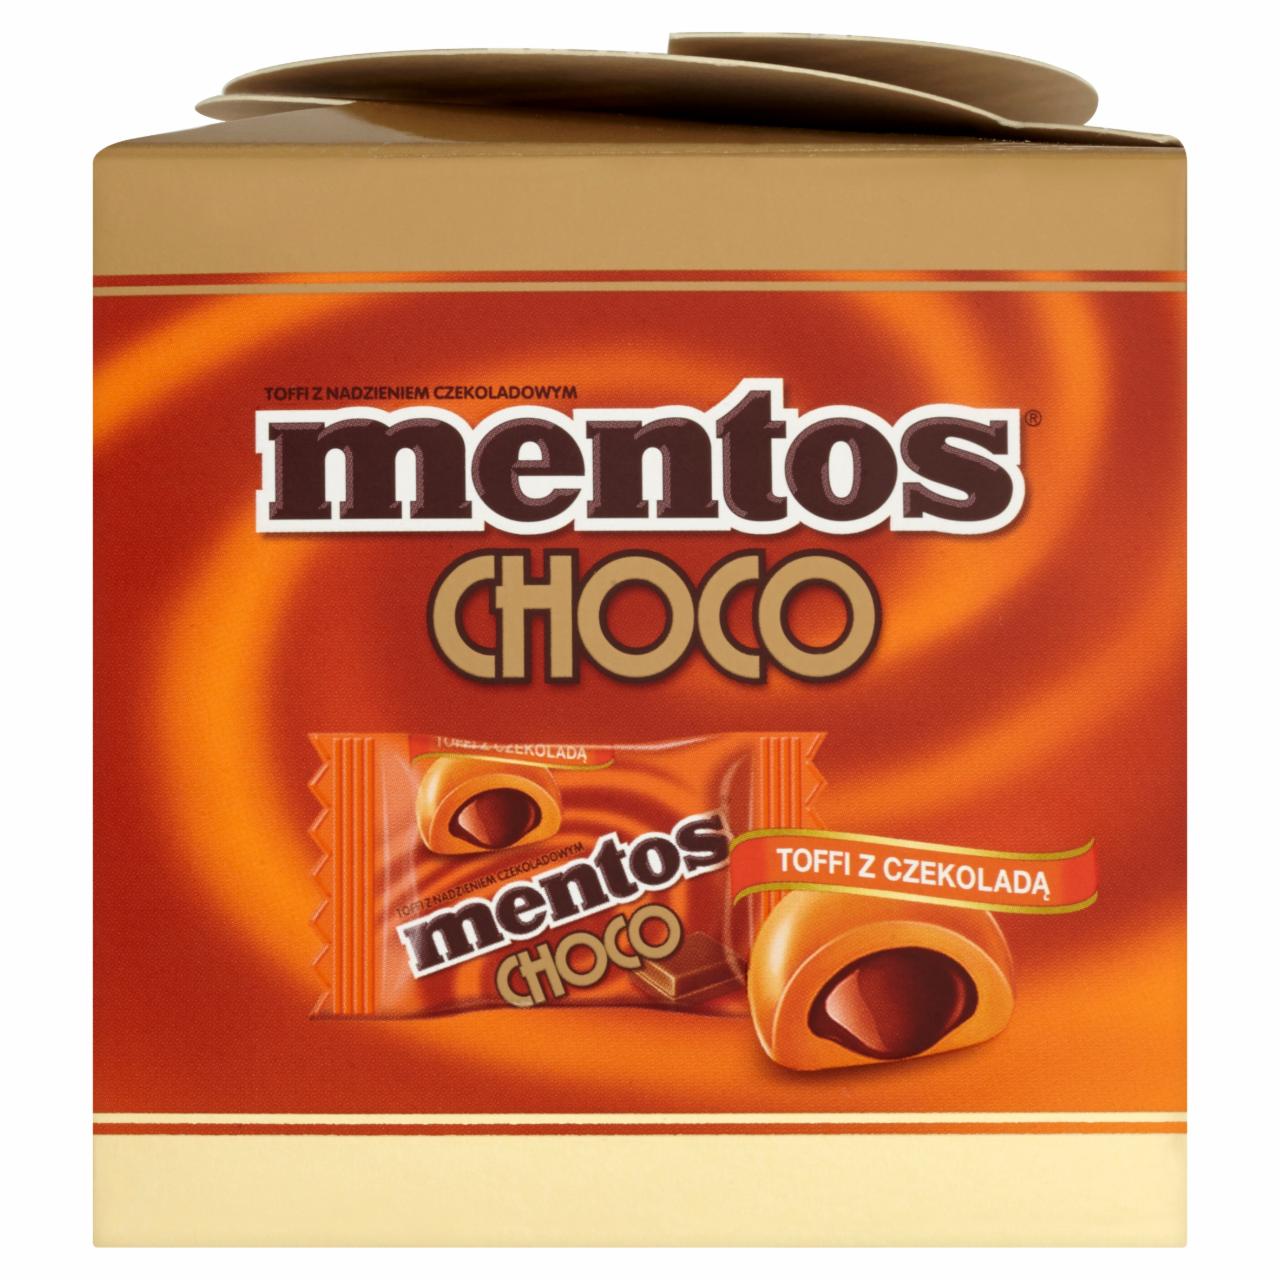 Zdjęcia - Mentos Choco Toffi z czekoladą 92 g